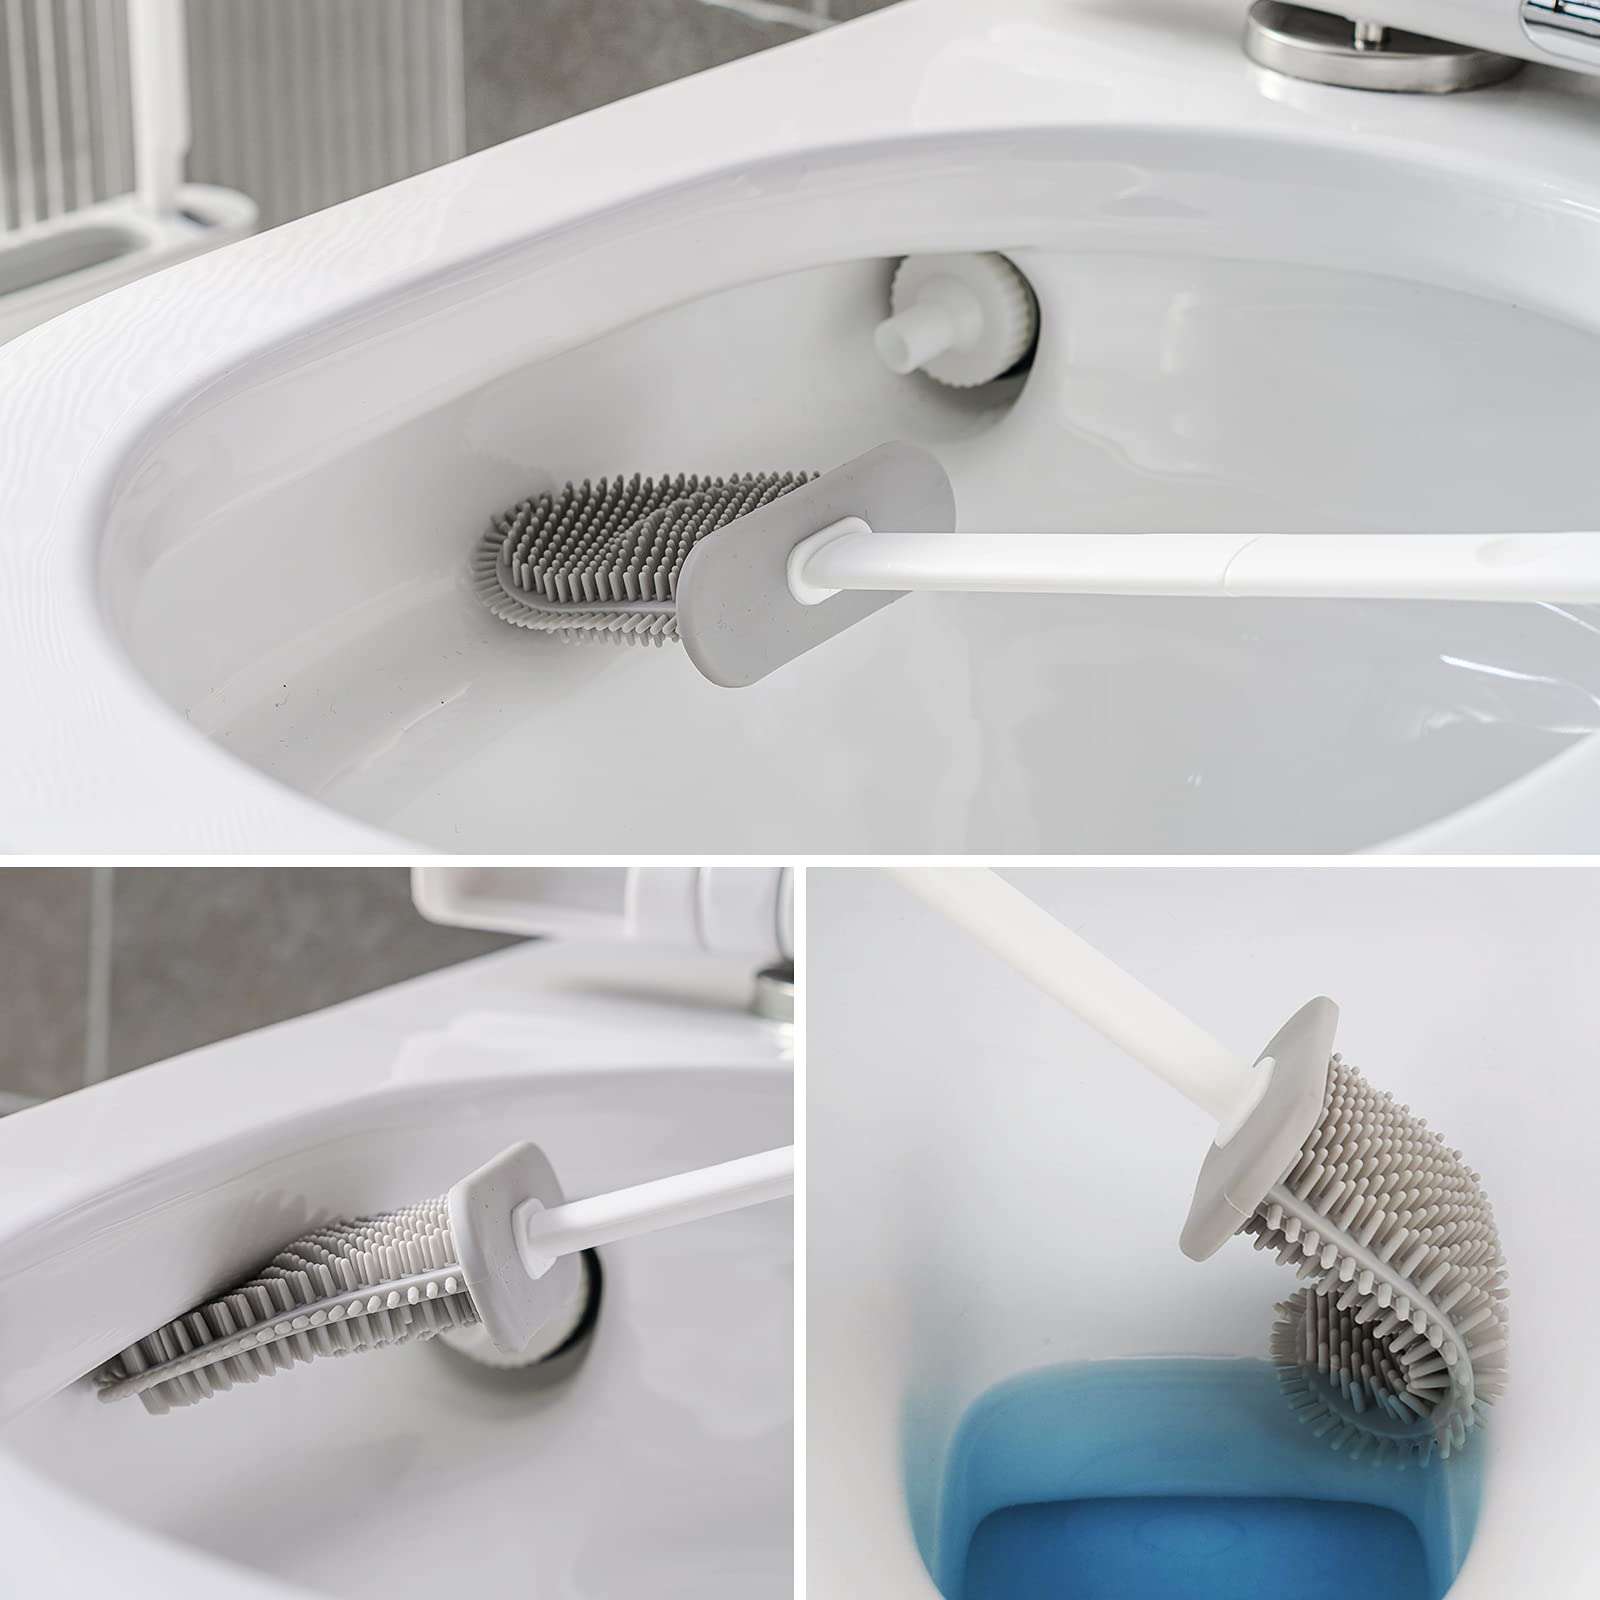  Toilet Brush, Toilet Bowl Brush and Holder Set for